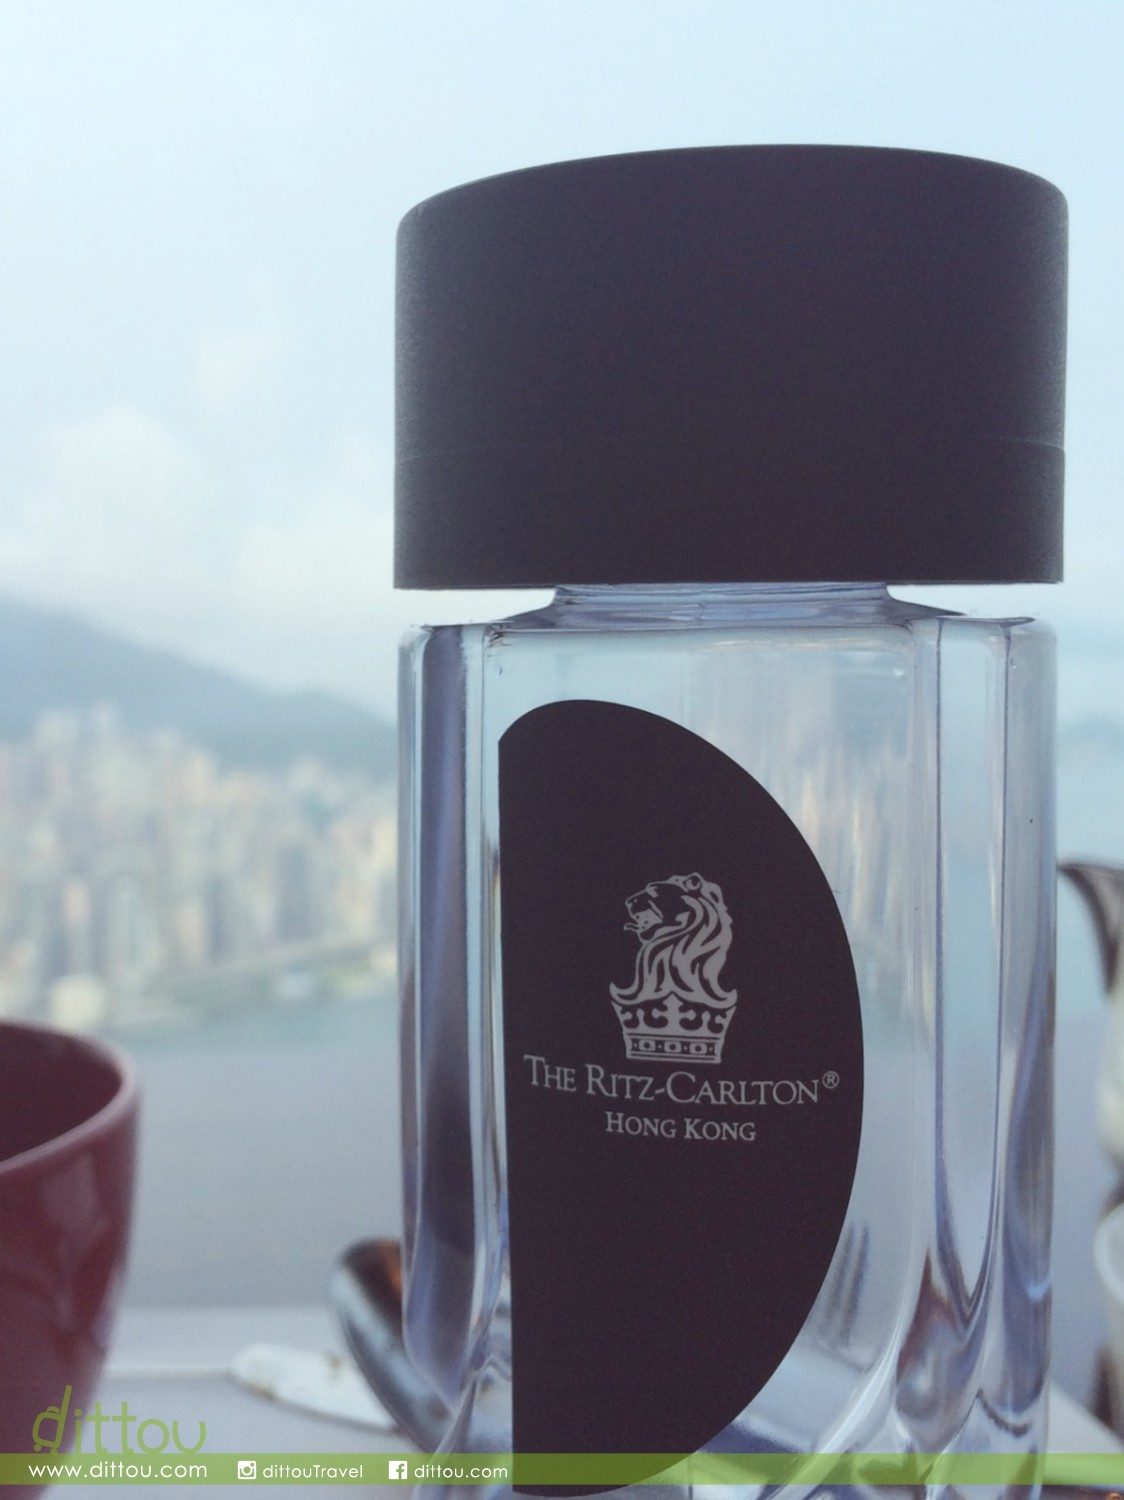 貼著The Ritz-Carlton, Hong Kong標籤和皇冠獅子頭的瓶裝水，看起來大有氣派而且方便衛生，不錯嘛對不對。